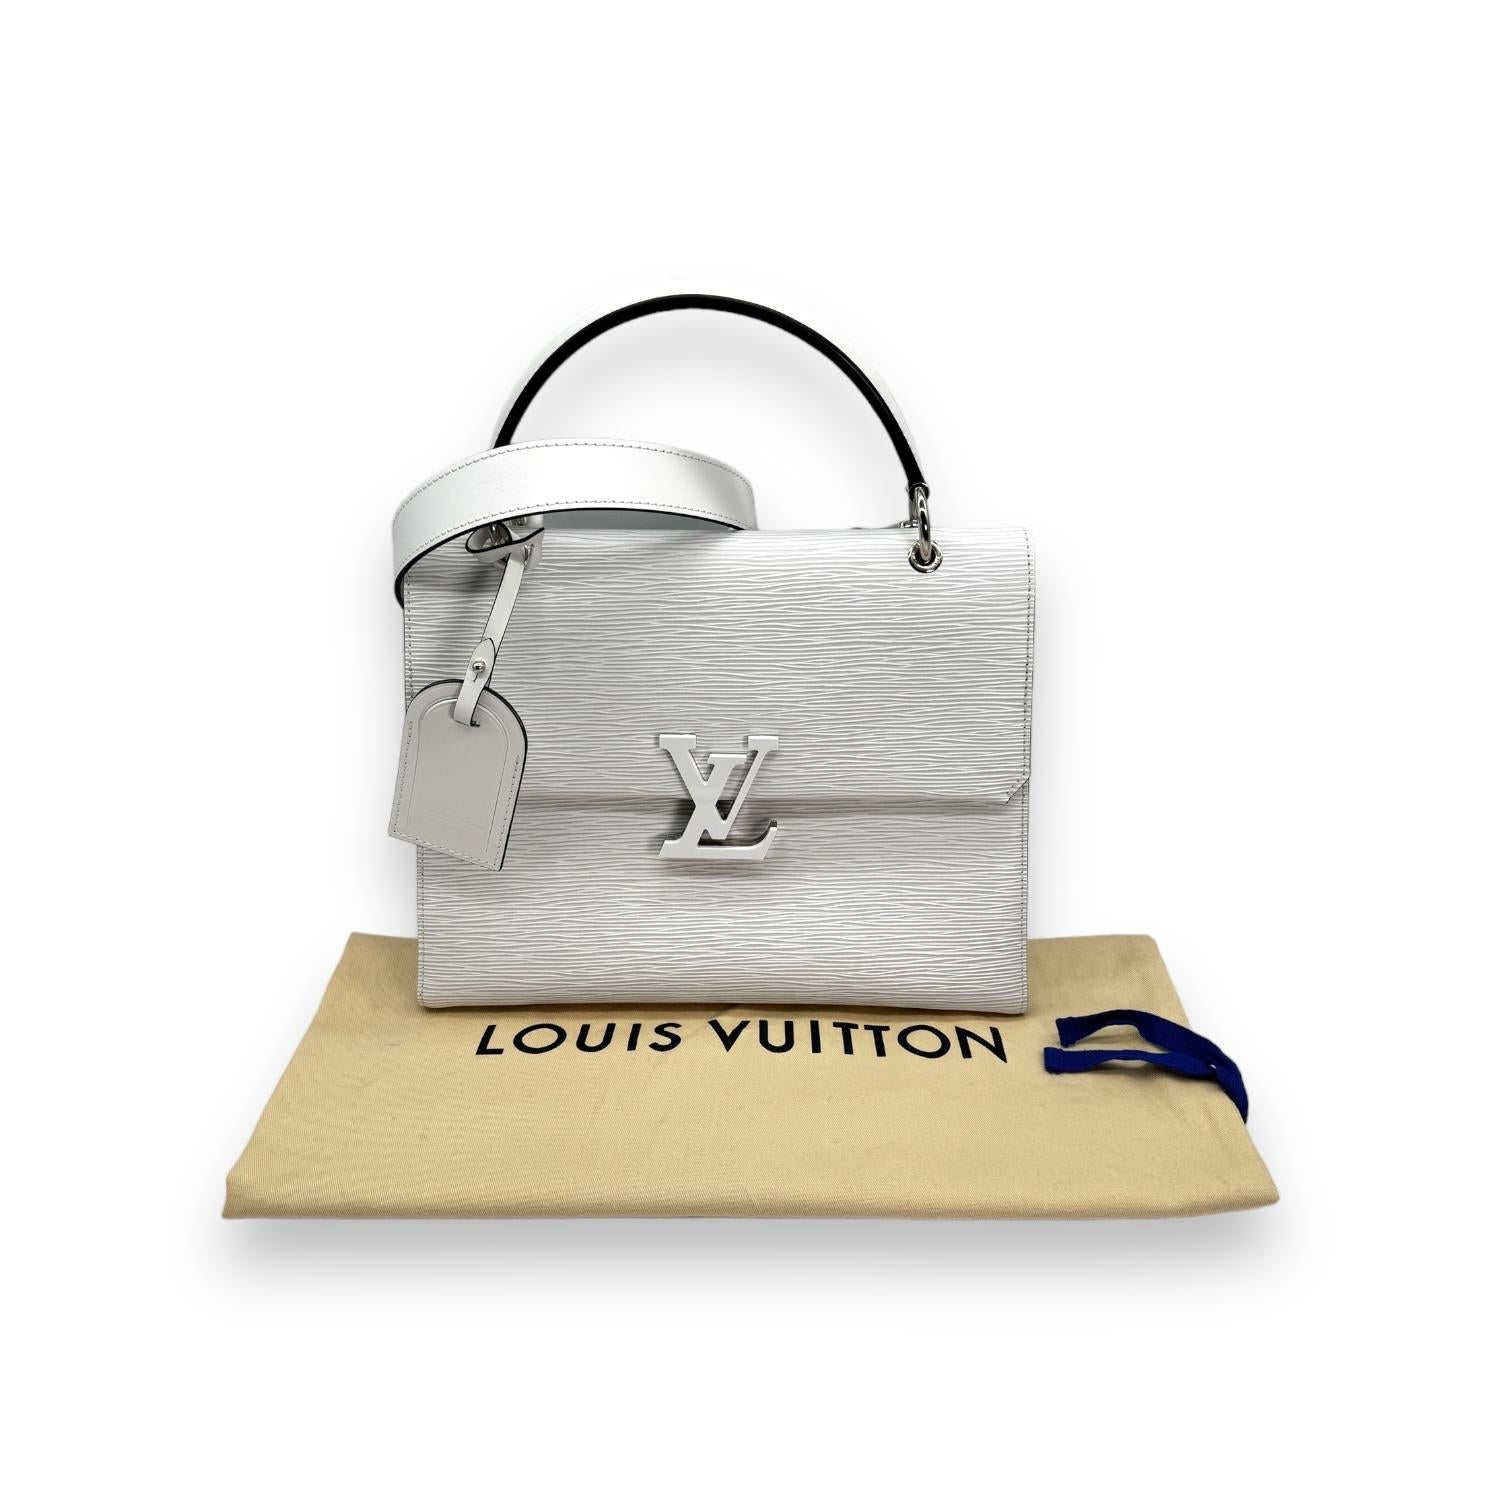 Offrez-vous le luxe avec le sac à main Louis Vuitton Epi Grenelle MM blanc. Confectionné en cuir blanc grainé Eleg et doté de ferrures argentées, ce sac à main respire l'élégance et la sophistication. Doté d'un intérieur spacieux avec de multiples